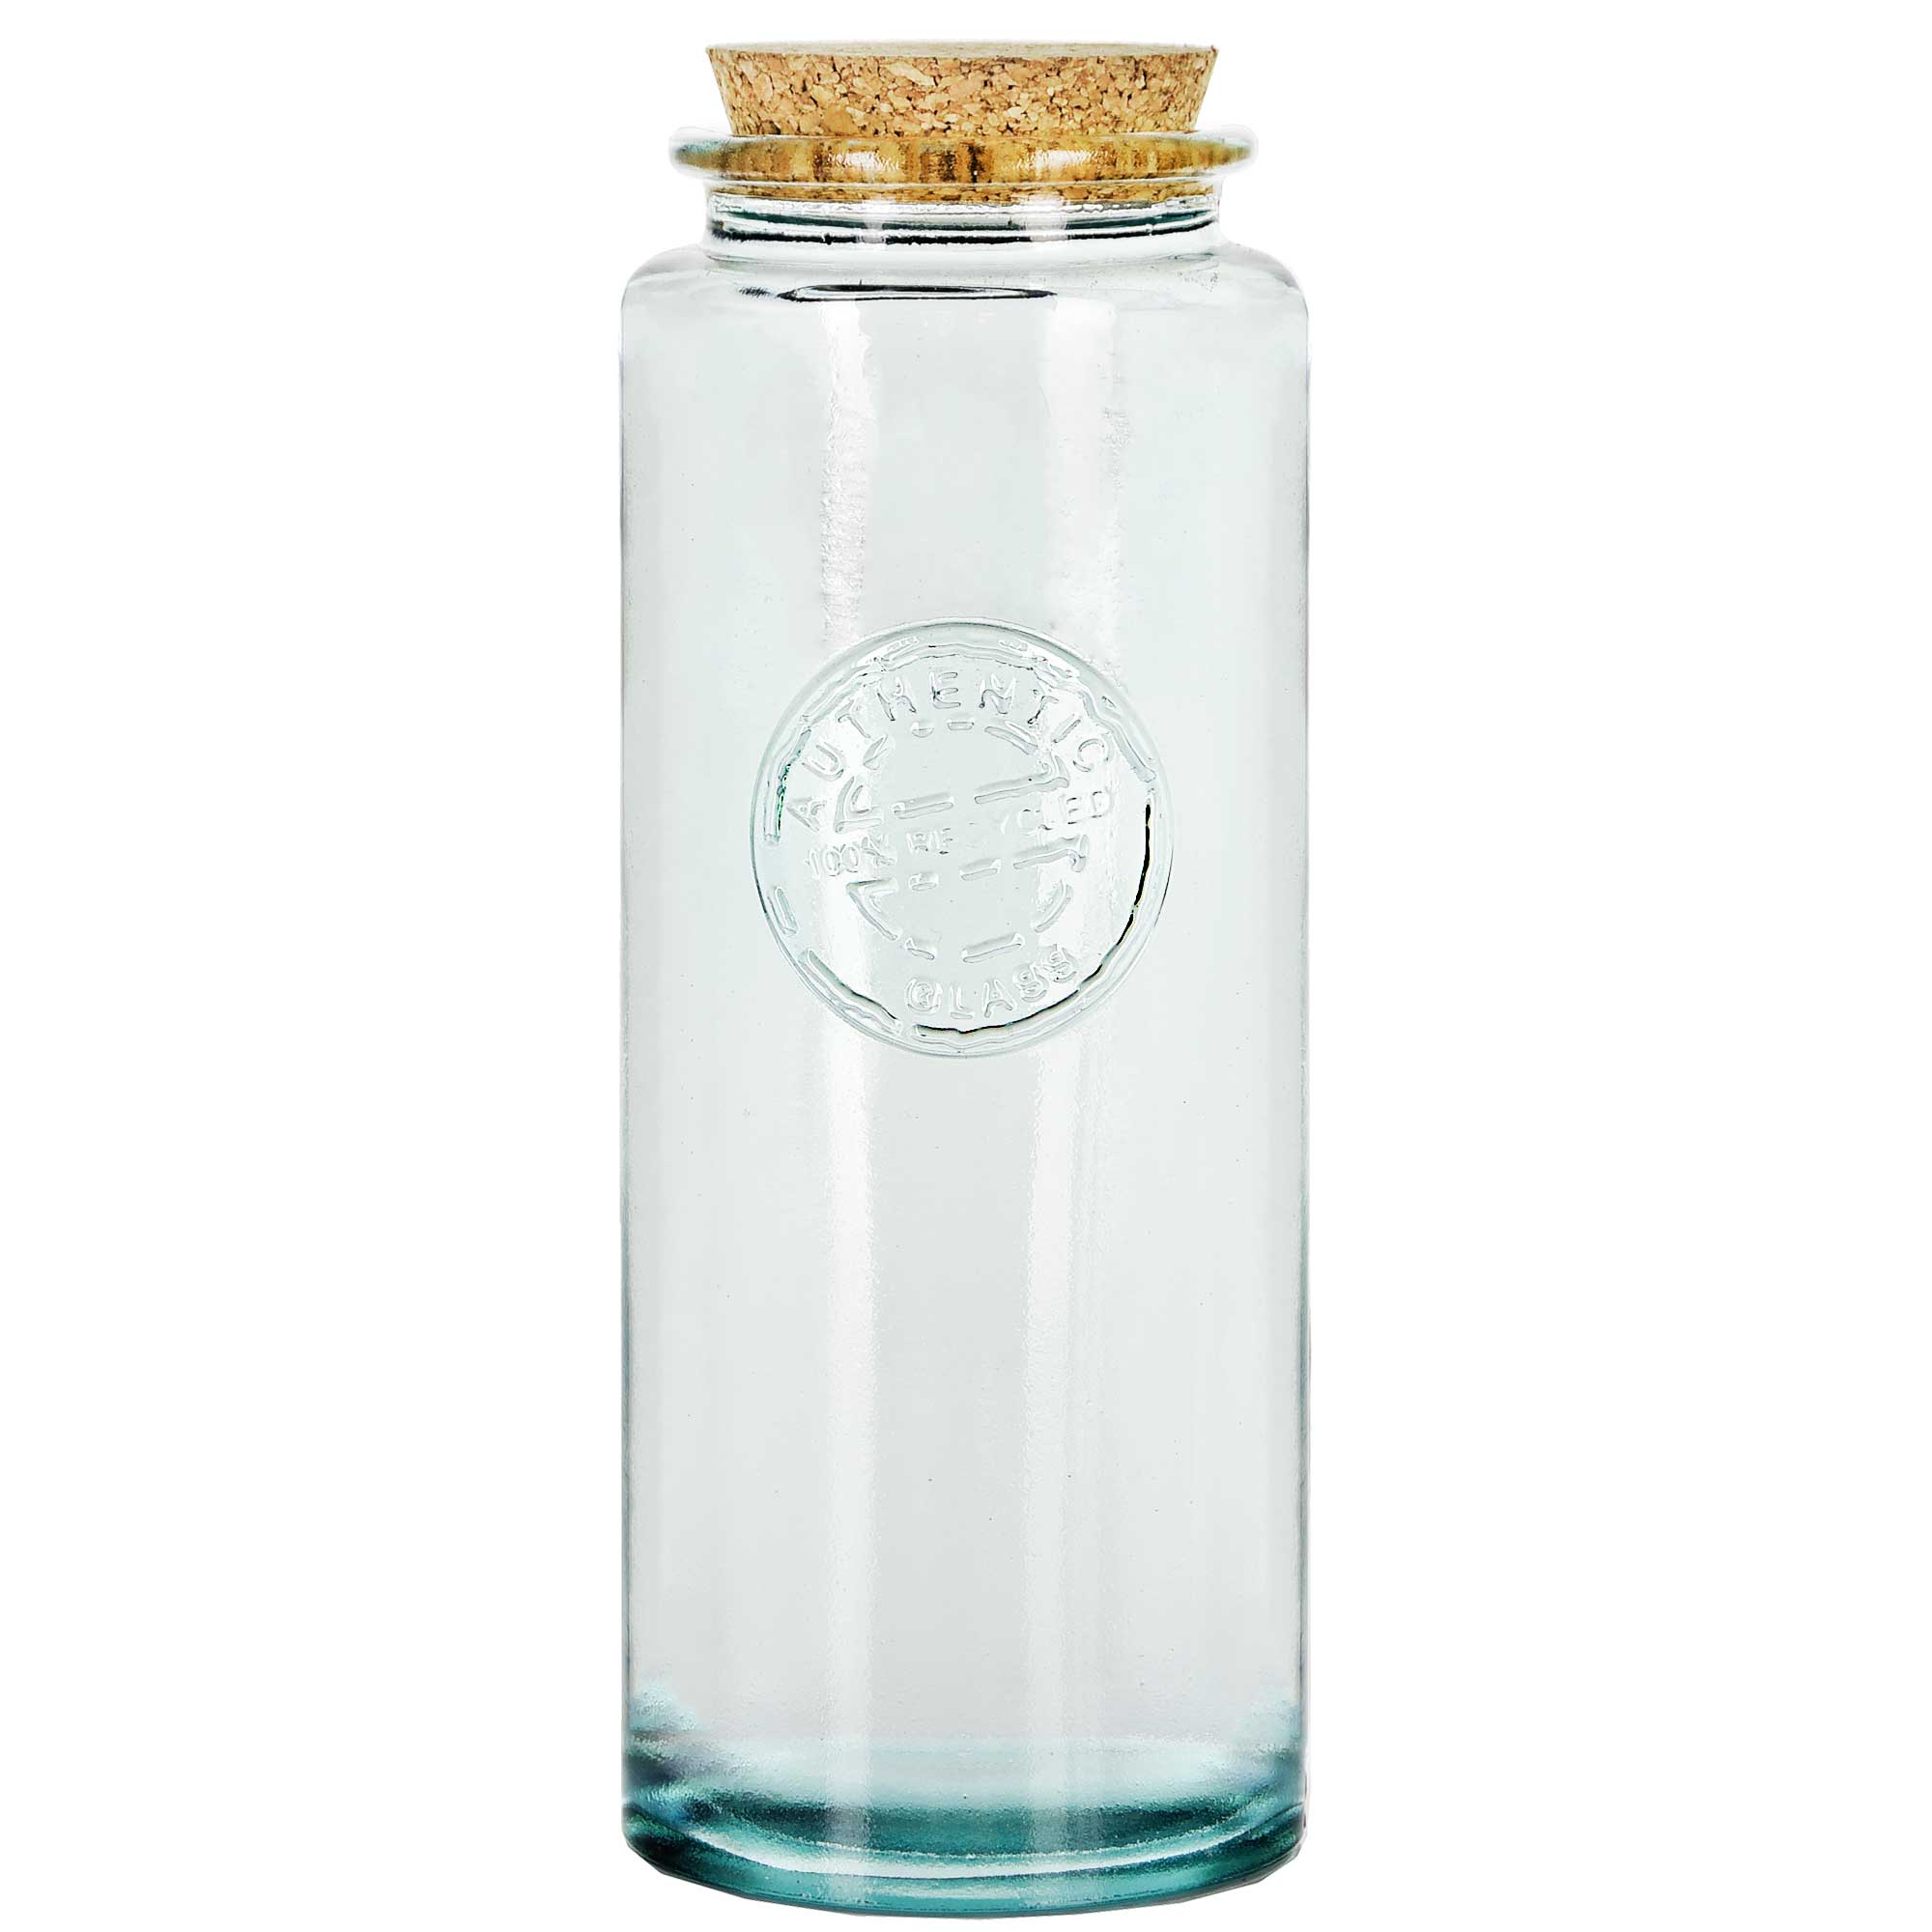 8.5 oz Glass Jar With Cork And Spoon - Glassnow